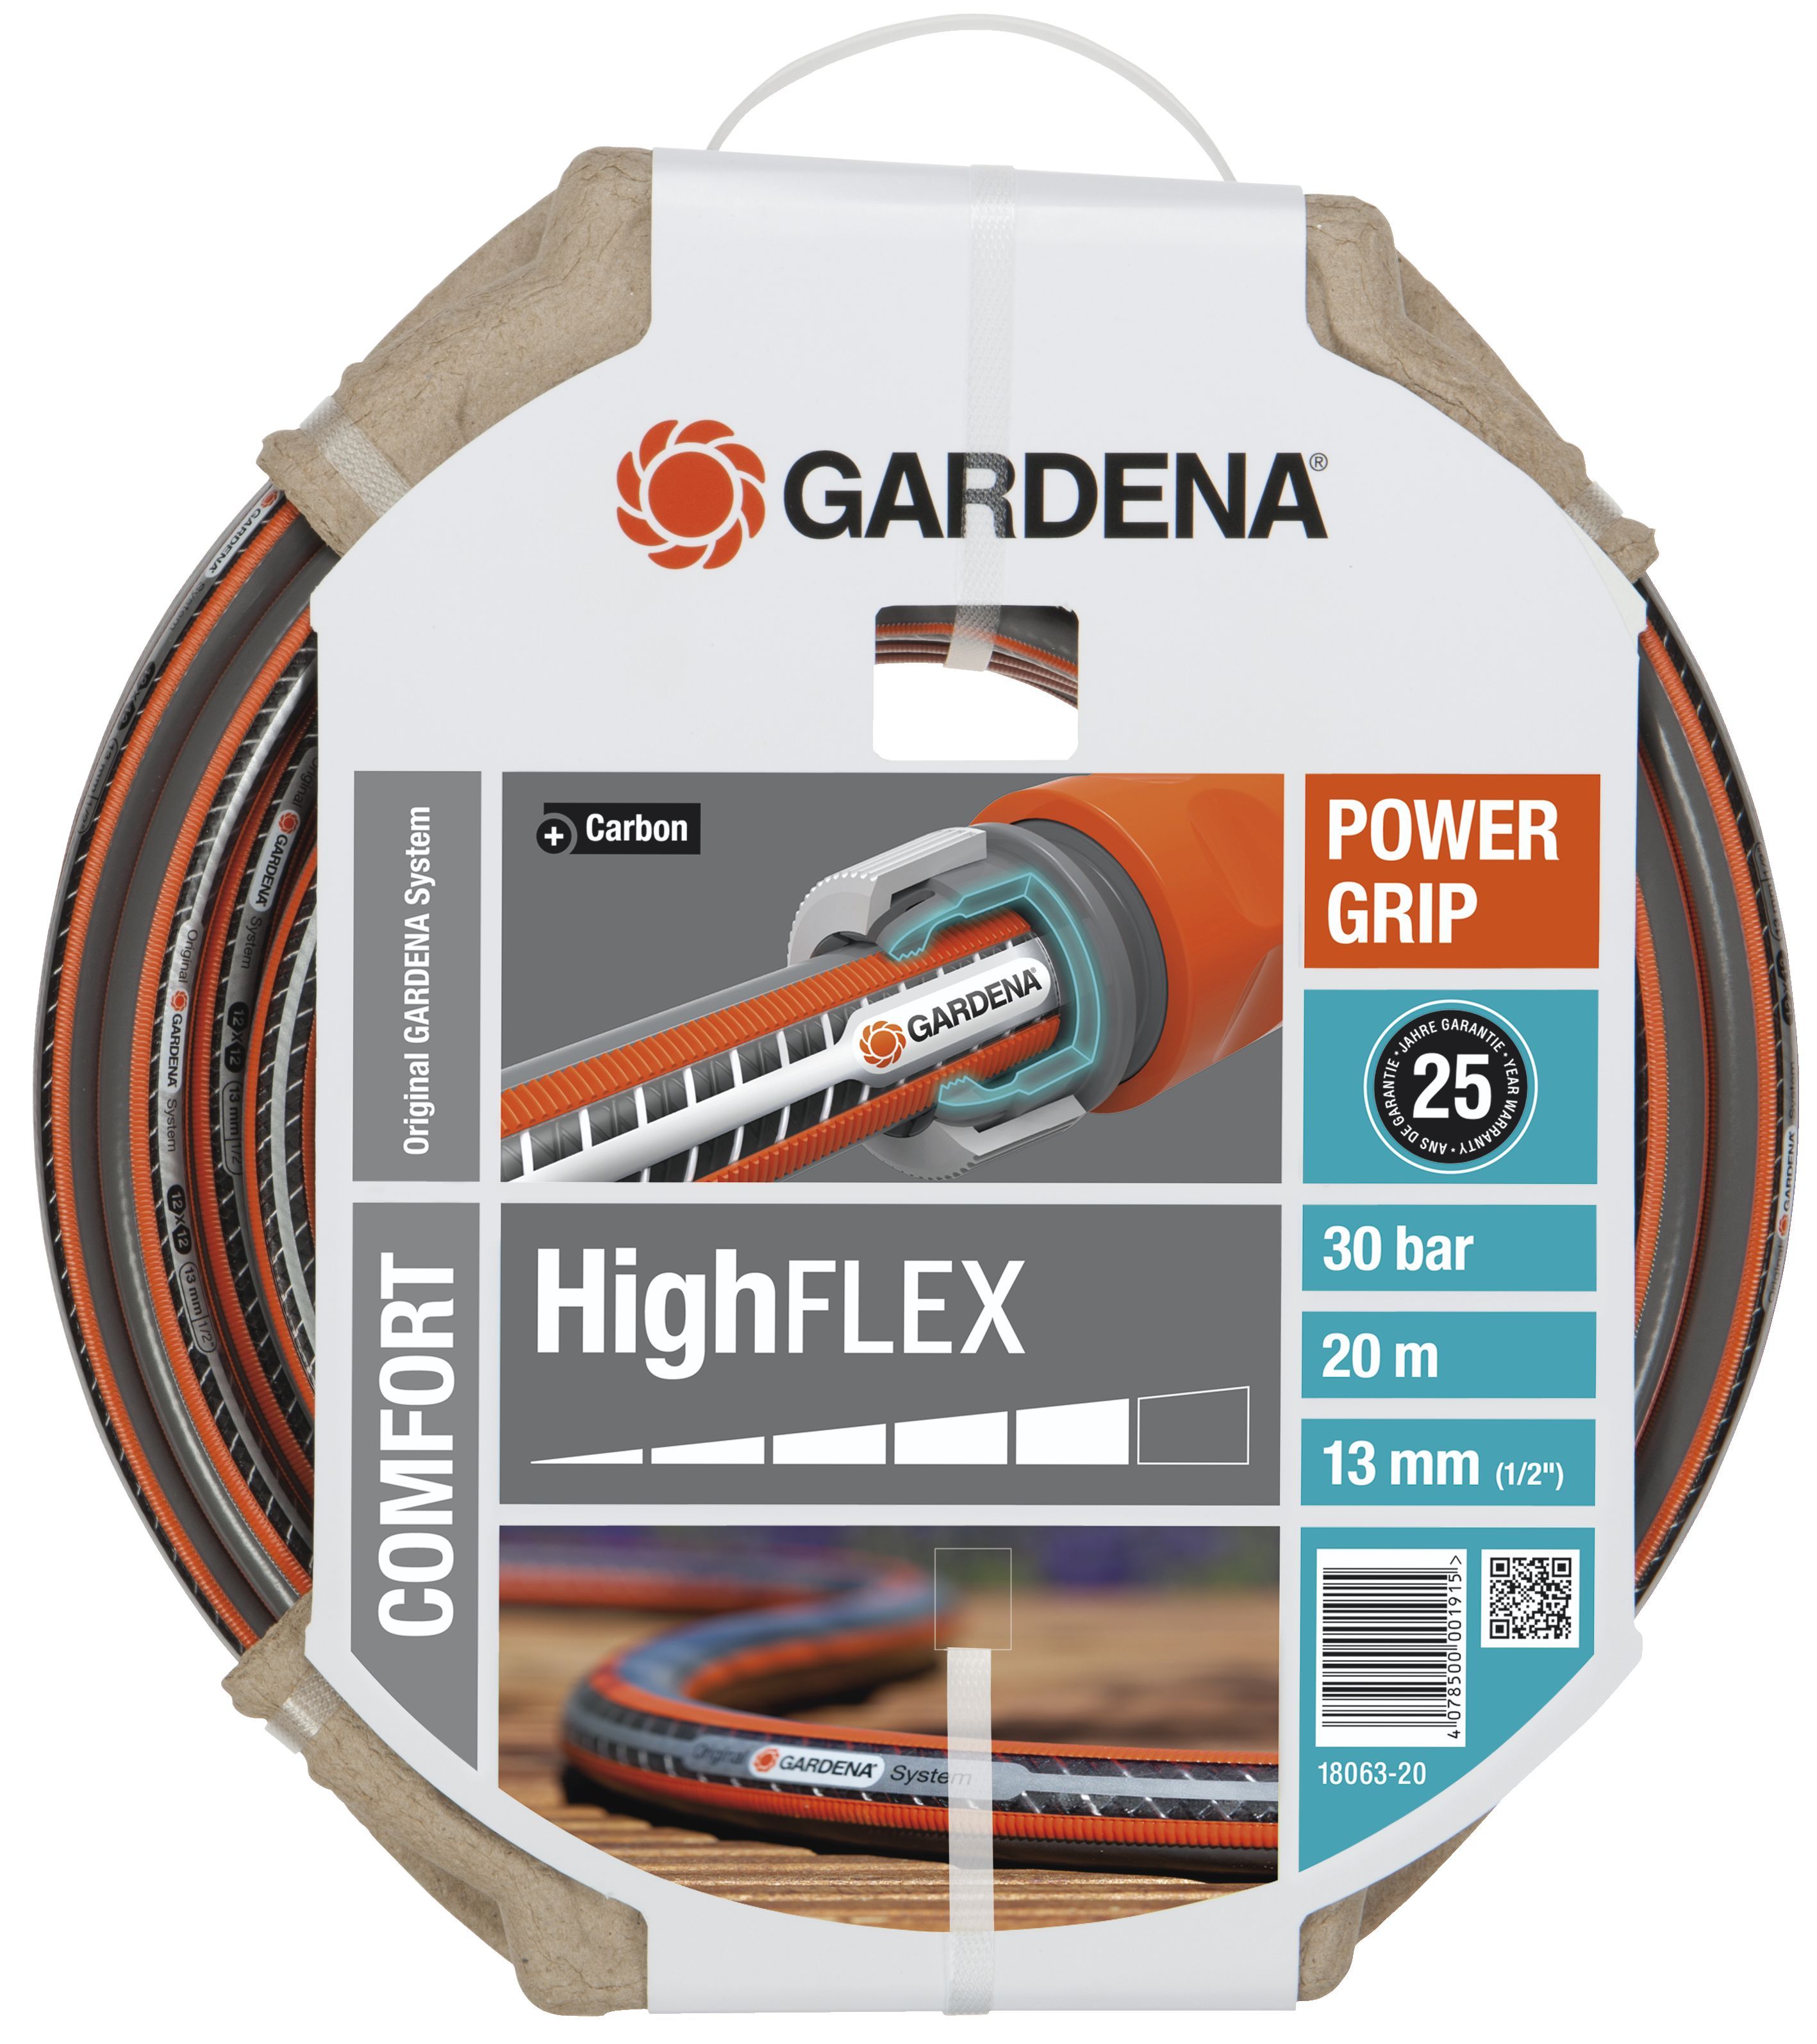 Gardena Comfort HighFLEX Schlauch 13 mm (1/2"), 20 m (18063-20)